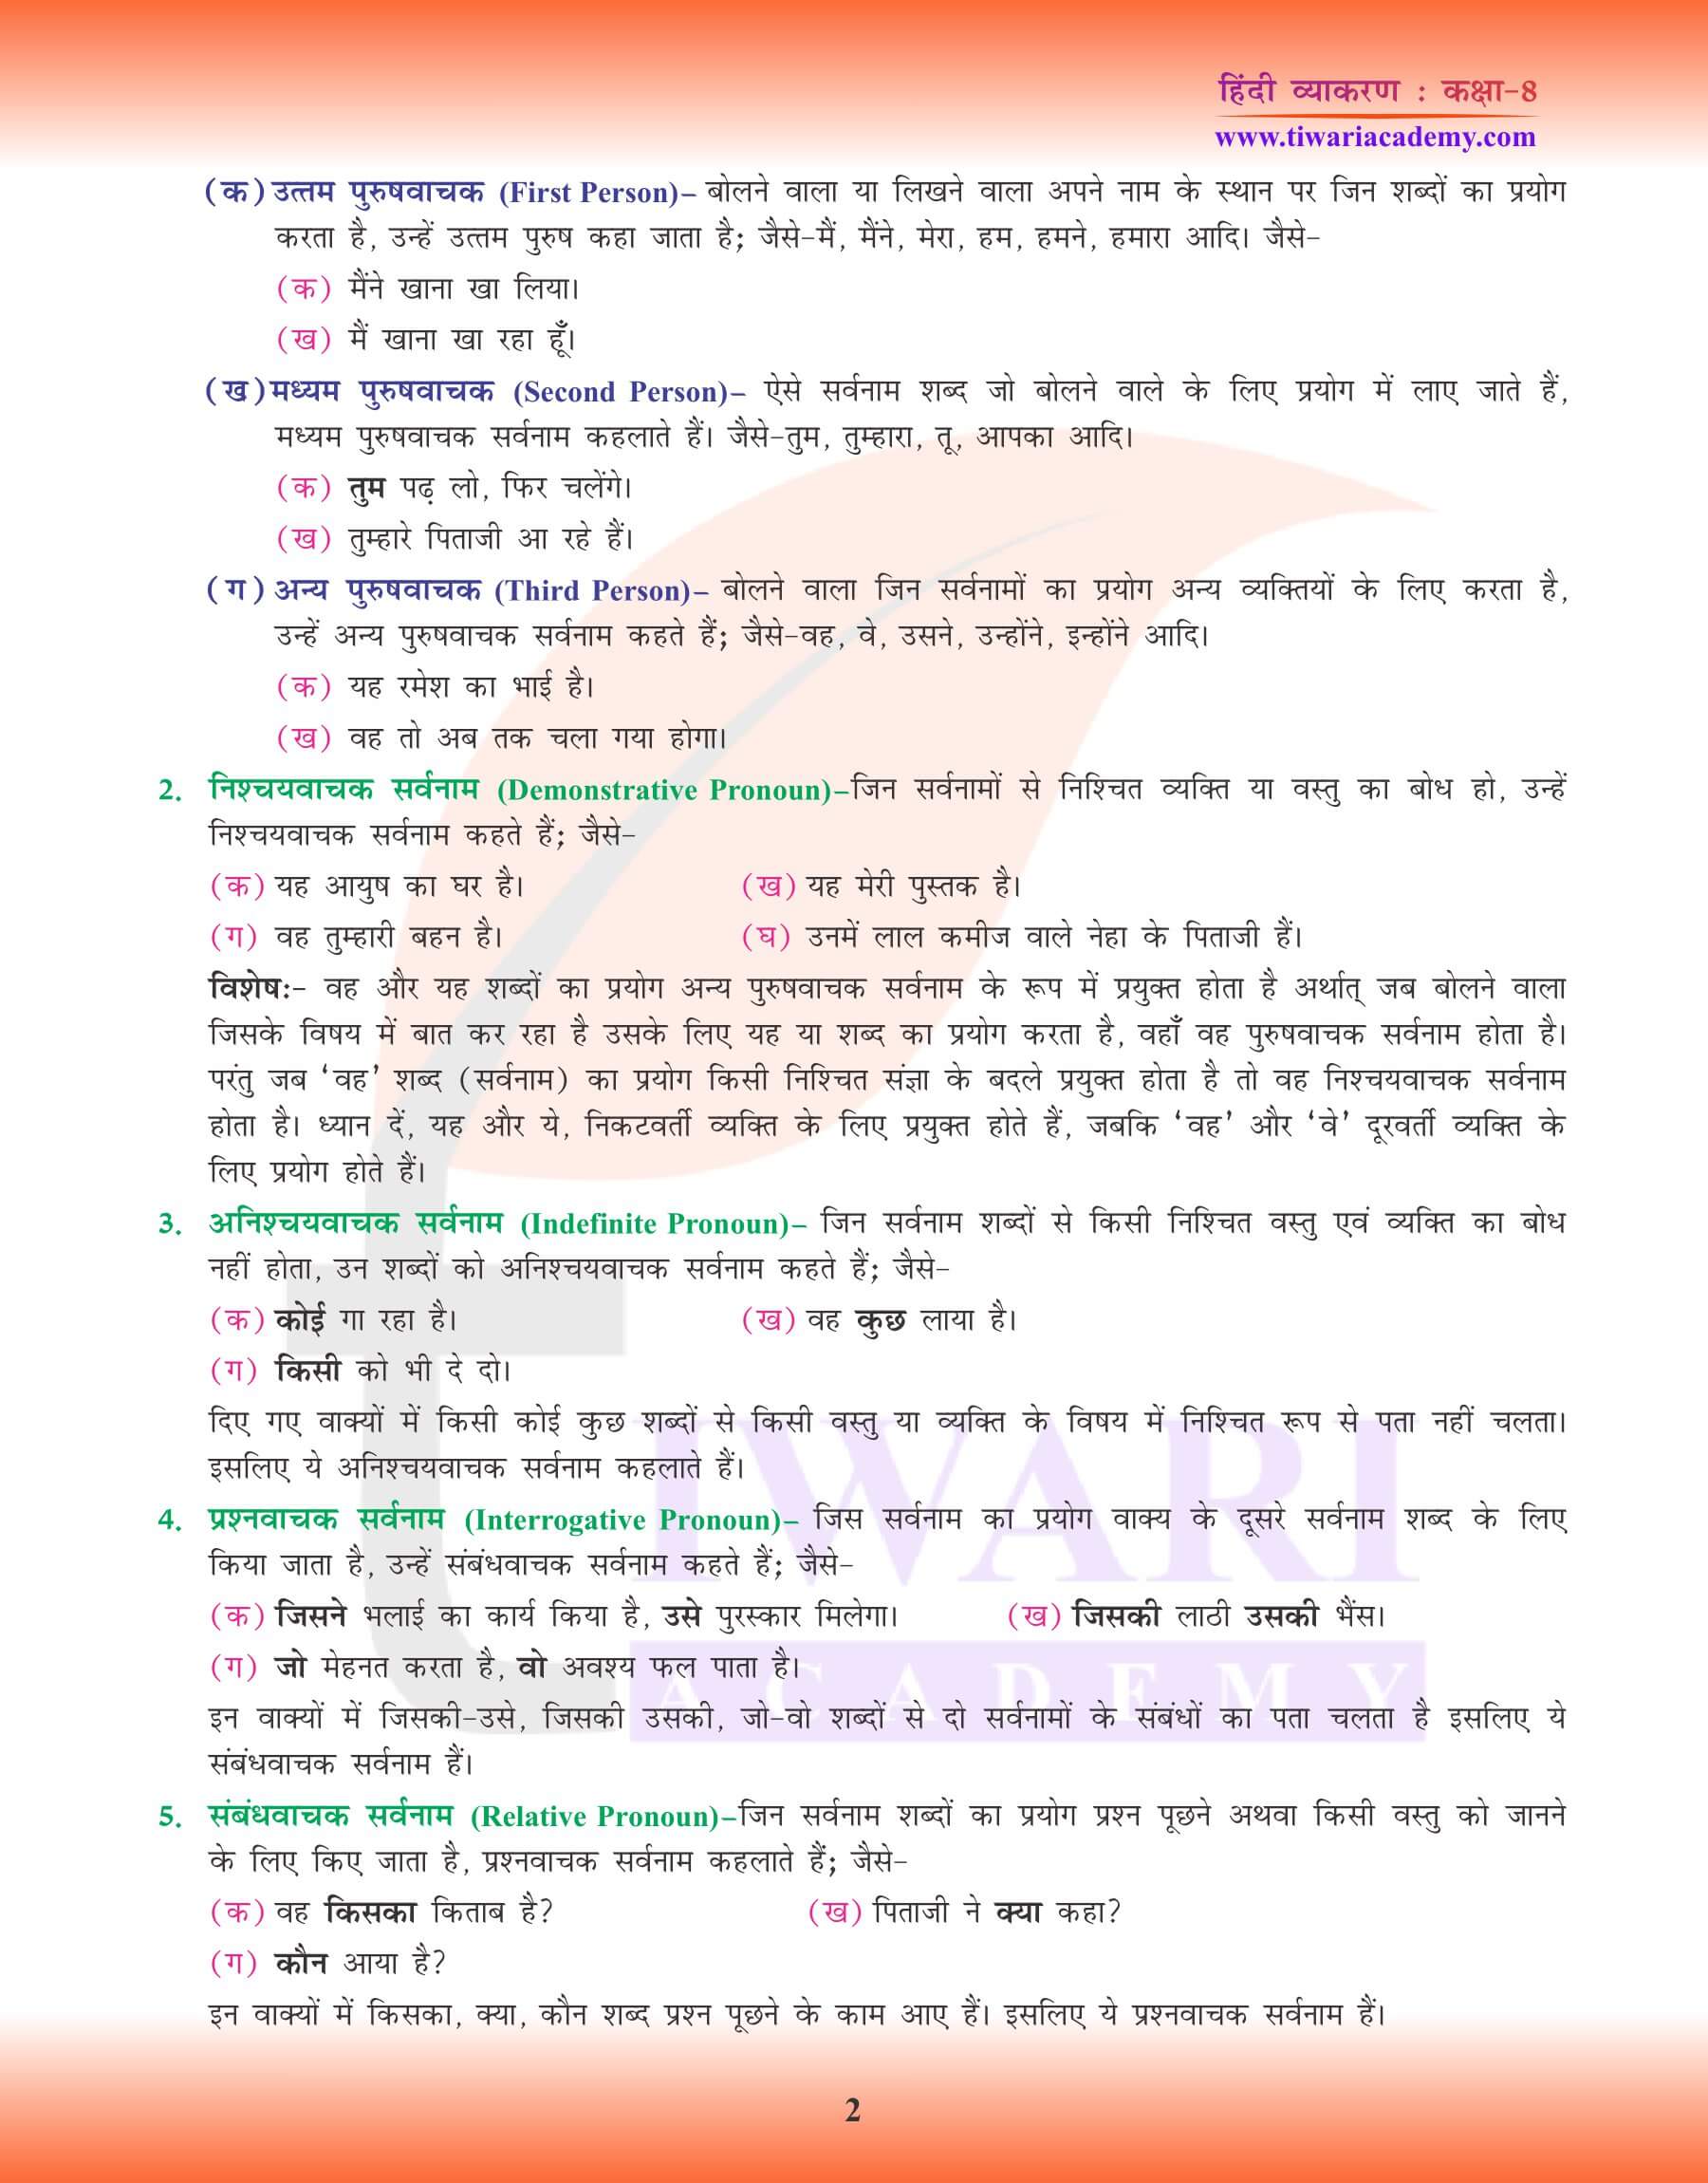 कक्षा 8 हिंदी व्याकरण में सर्वनाम